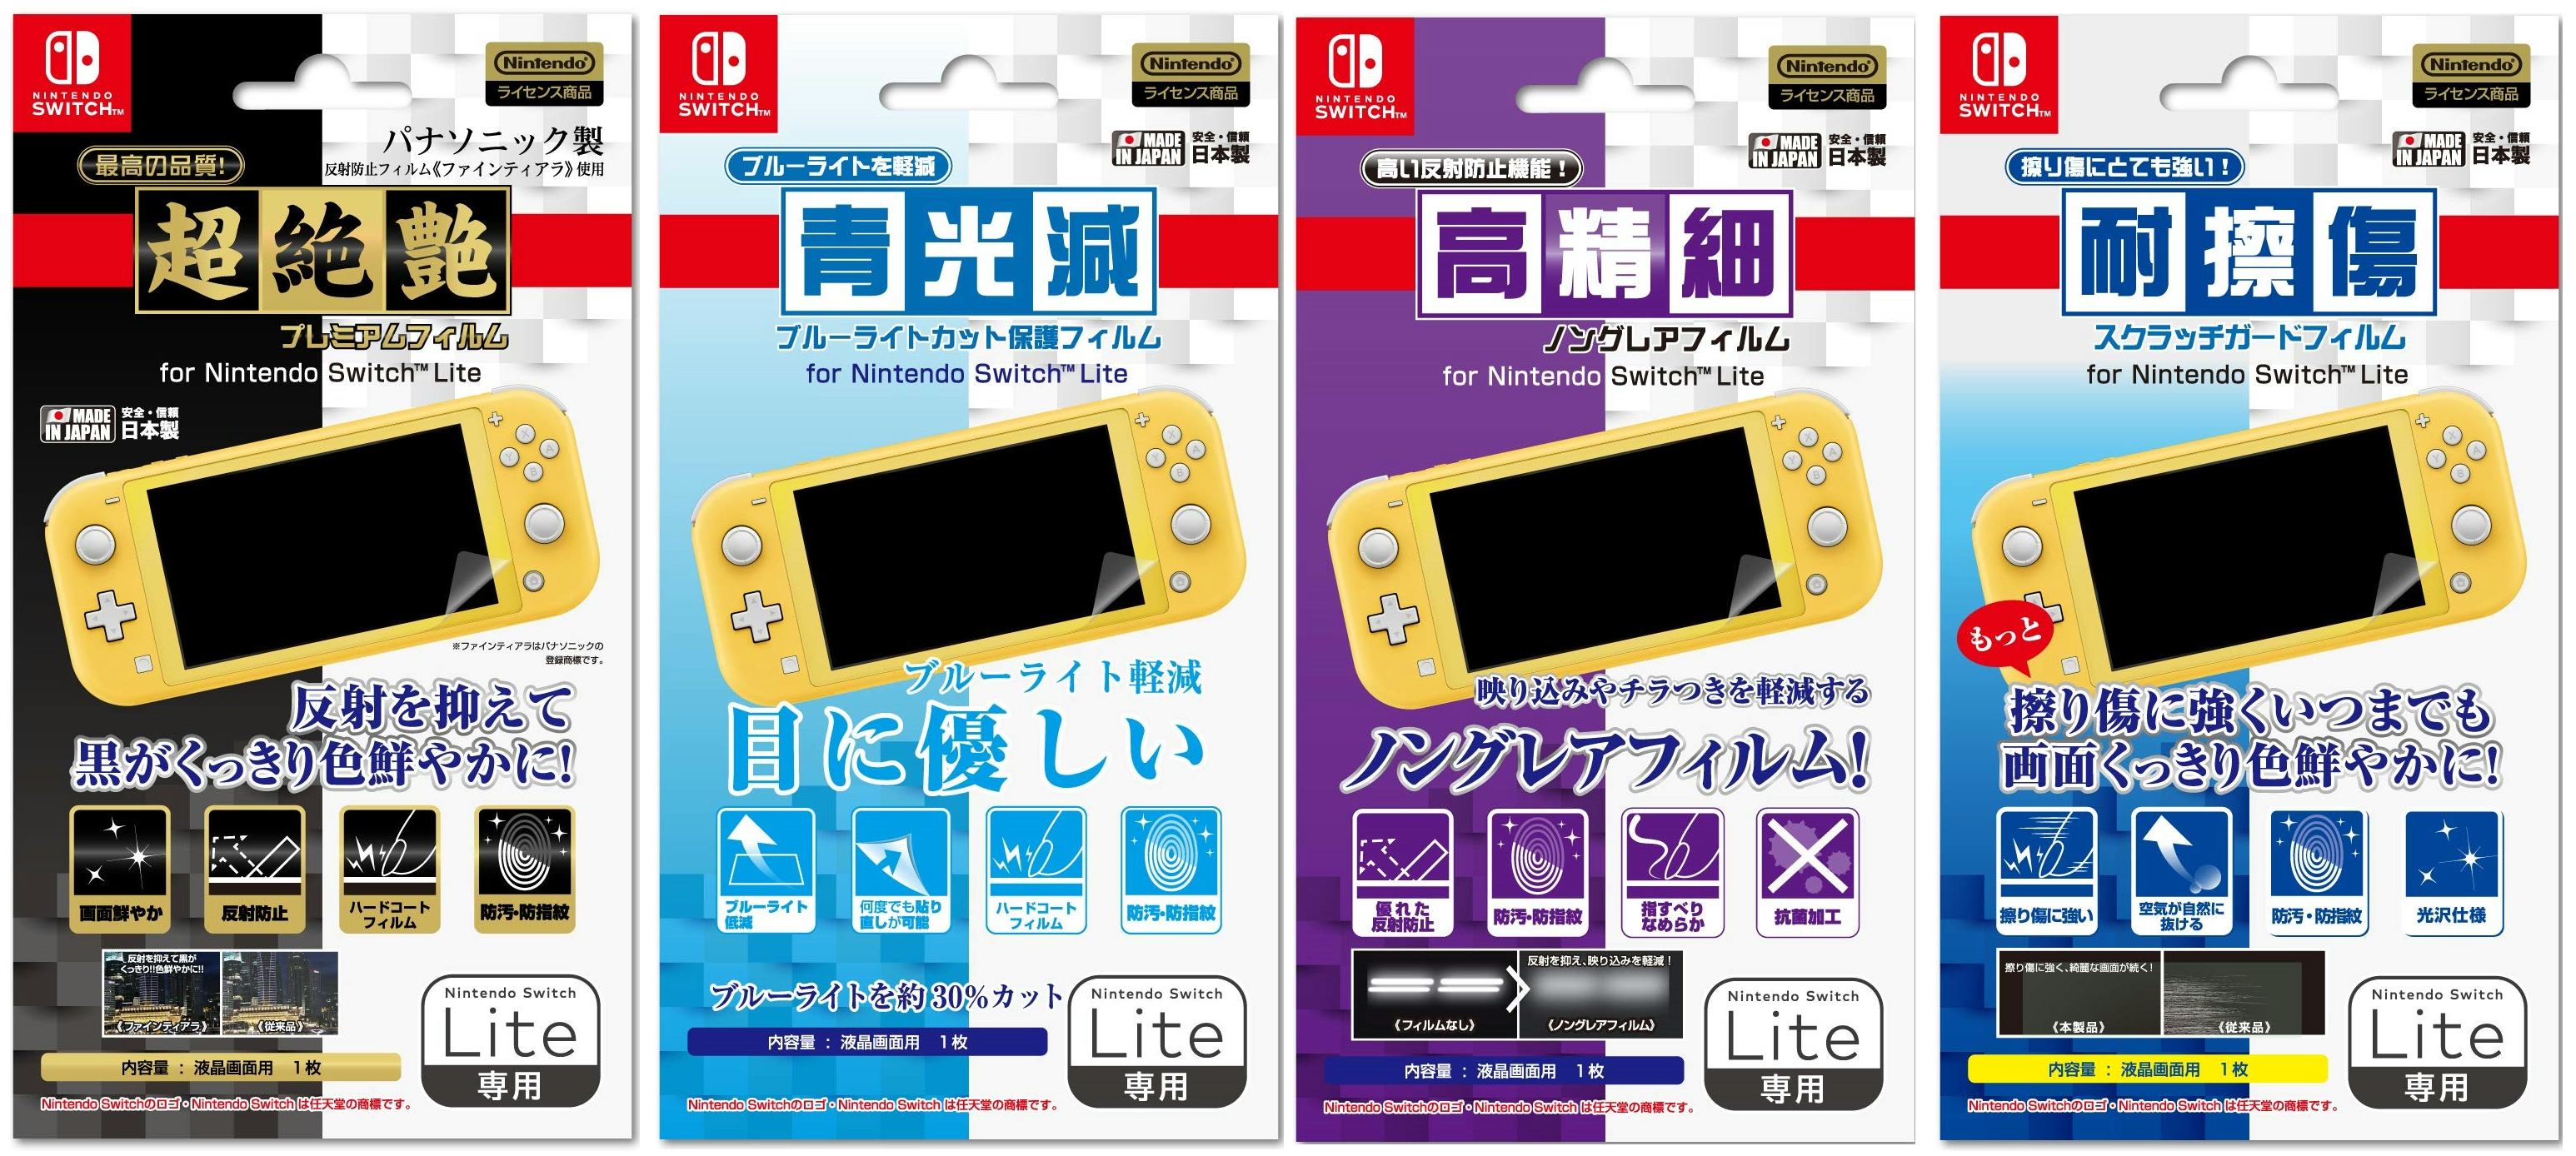 アイレックスから「Nintendo Switch Lite」用のアクセサリーが2019年9 